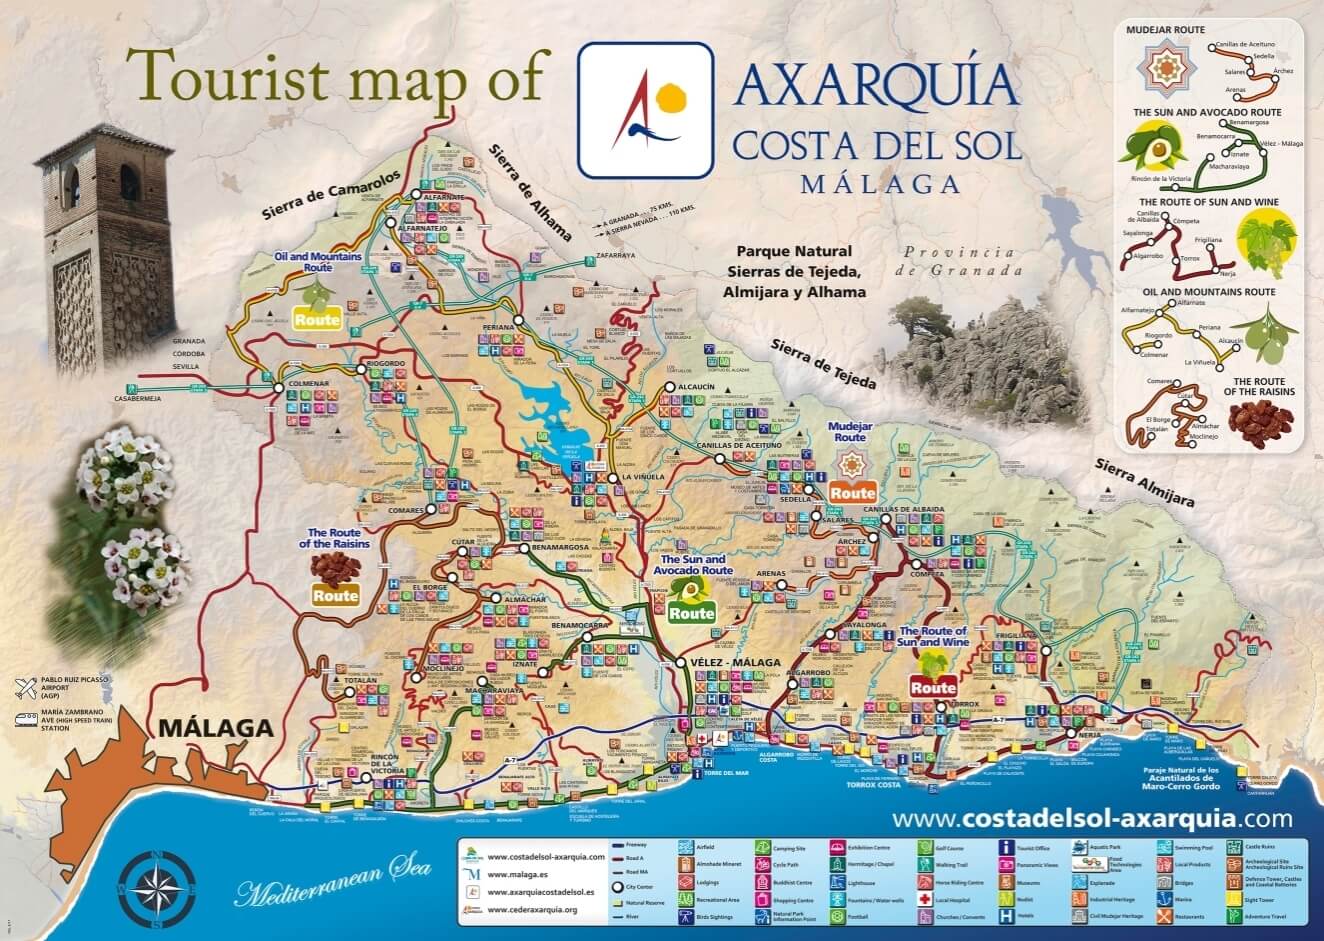 Mapa turístico Axarquía y Costa del Sol